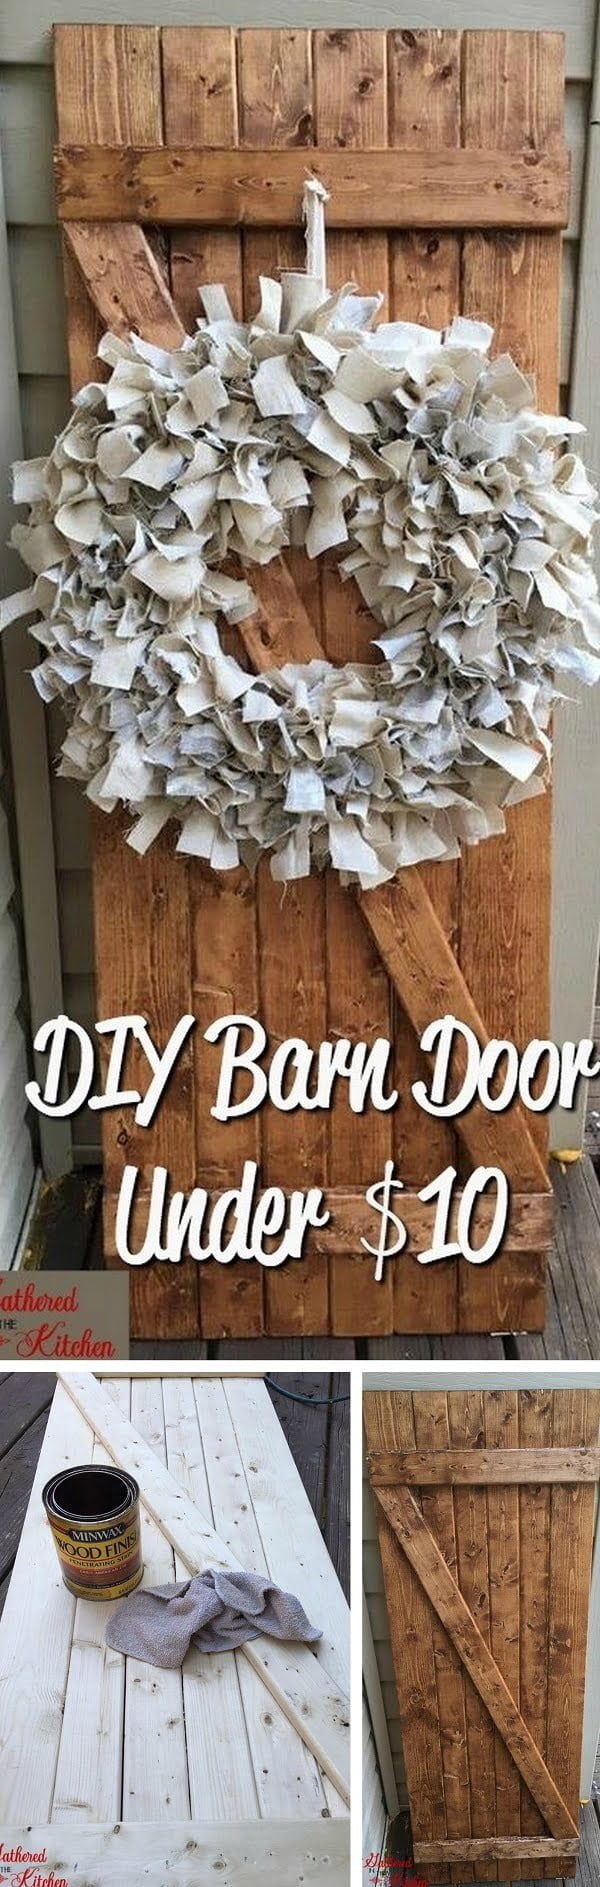 How to make DIY rustic barn door in 30 minutes 